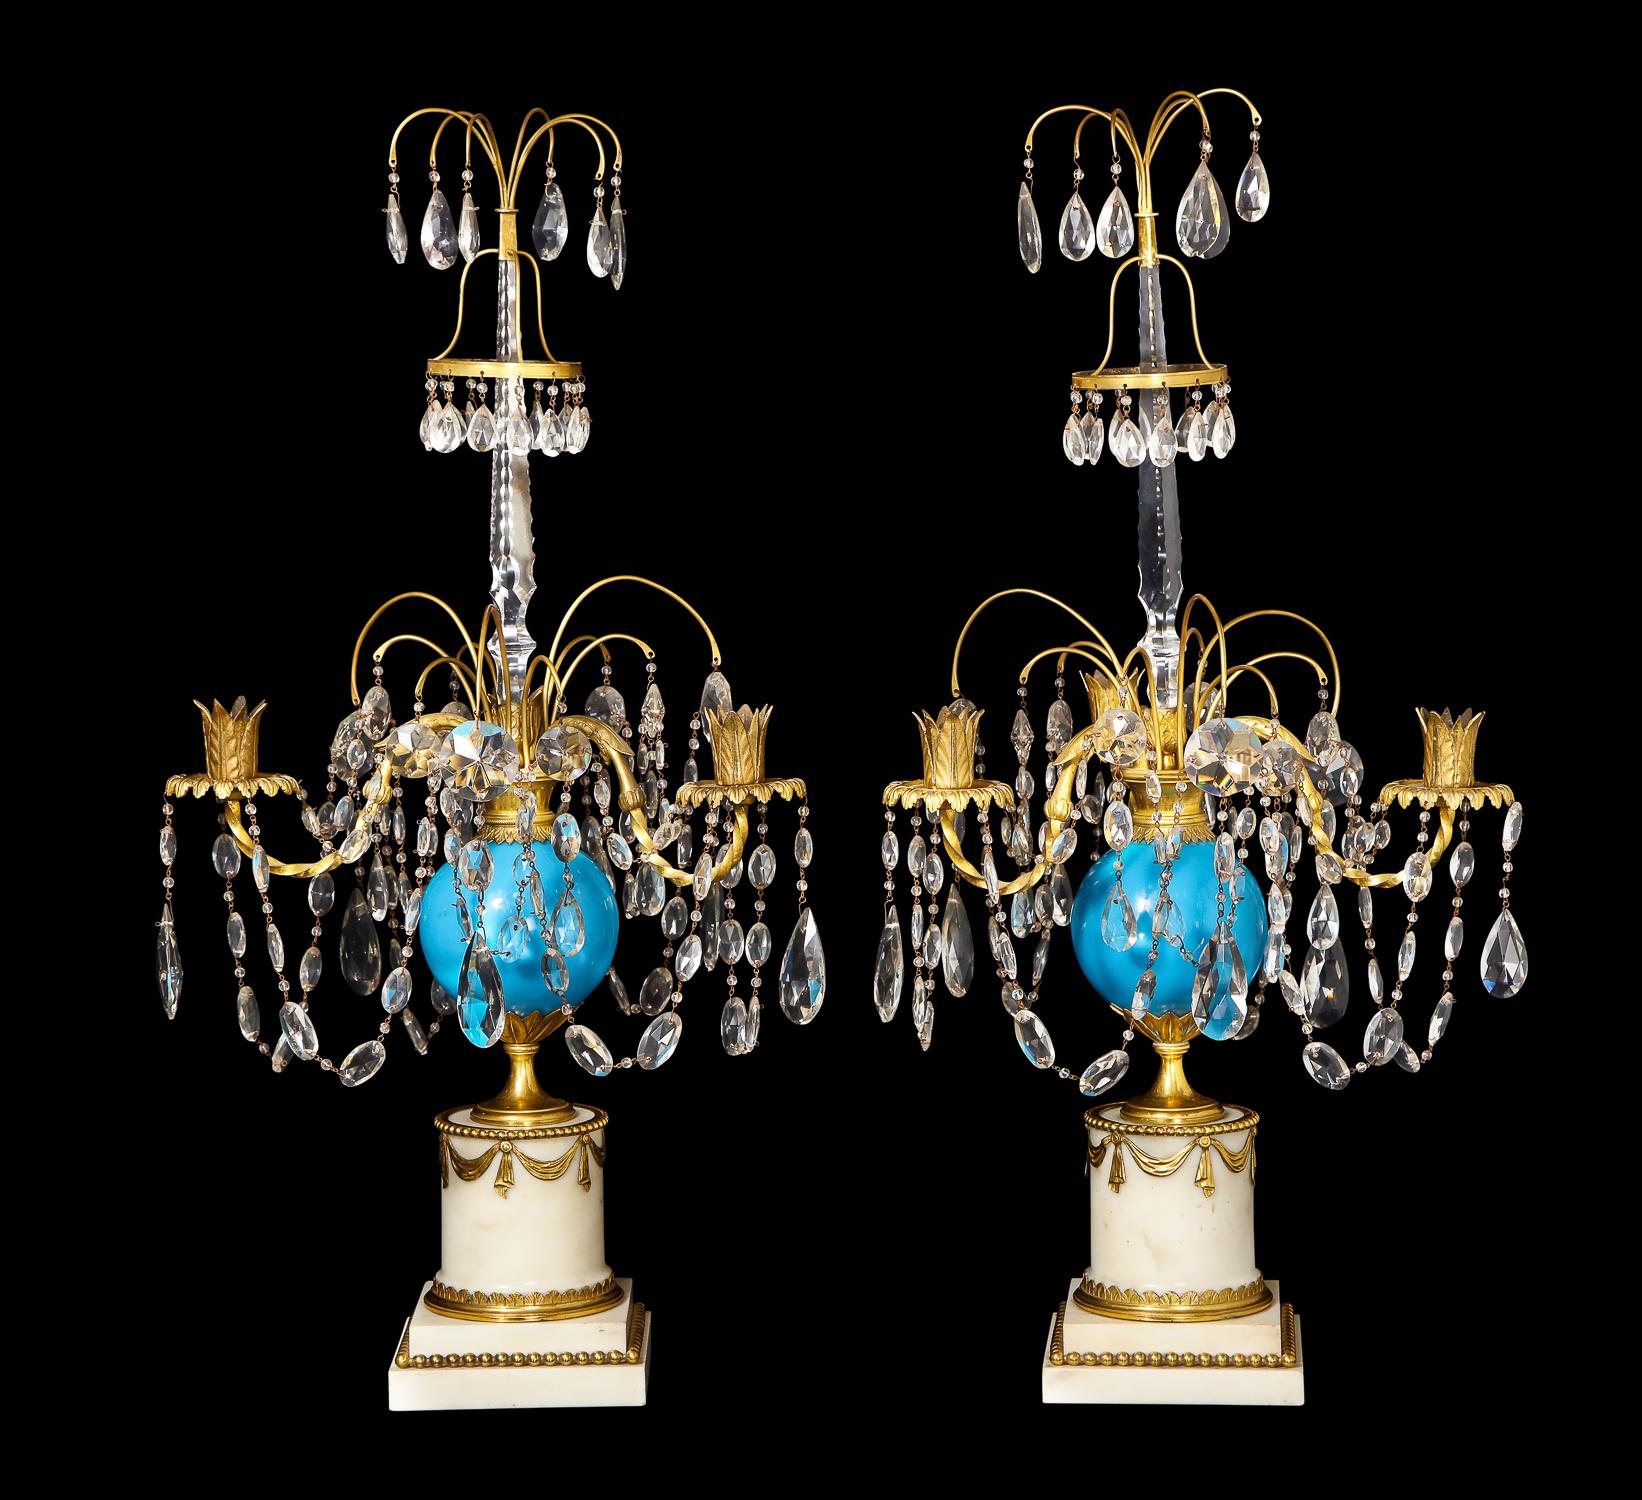 Ein Paar exquisiter antiker russischer neoklassischer Kandelaber aus vergoldeter Bronze, blauem Opalglas, geschliffenem Kristall und weißem Marmor, die mit einer zentralen Kugel aus blauem Opalglas, Ketten aus geschliffenem Kristall und vergoldeten